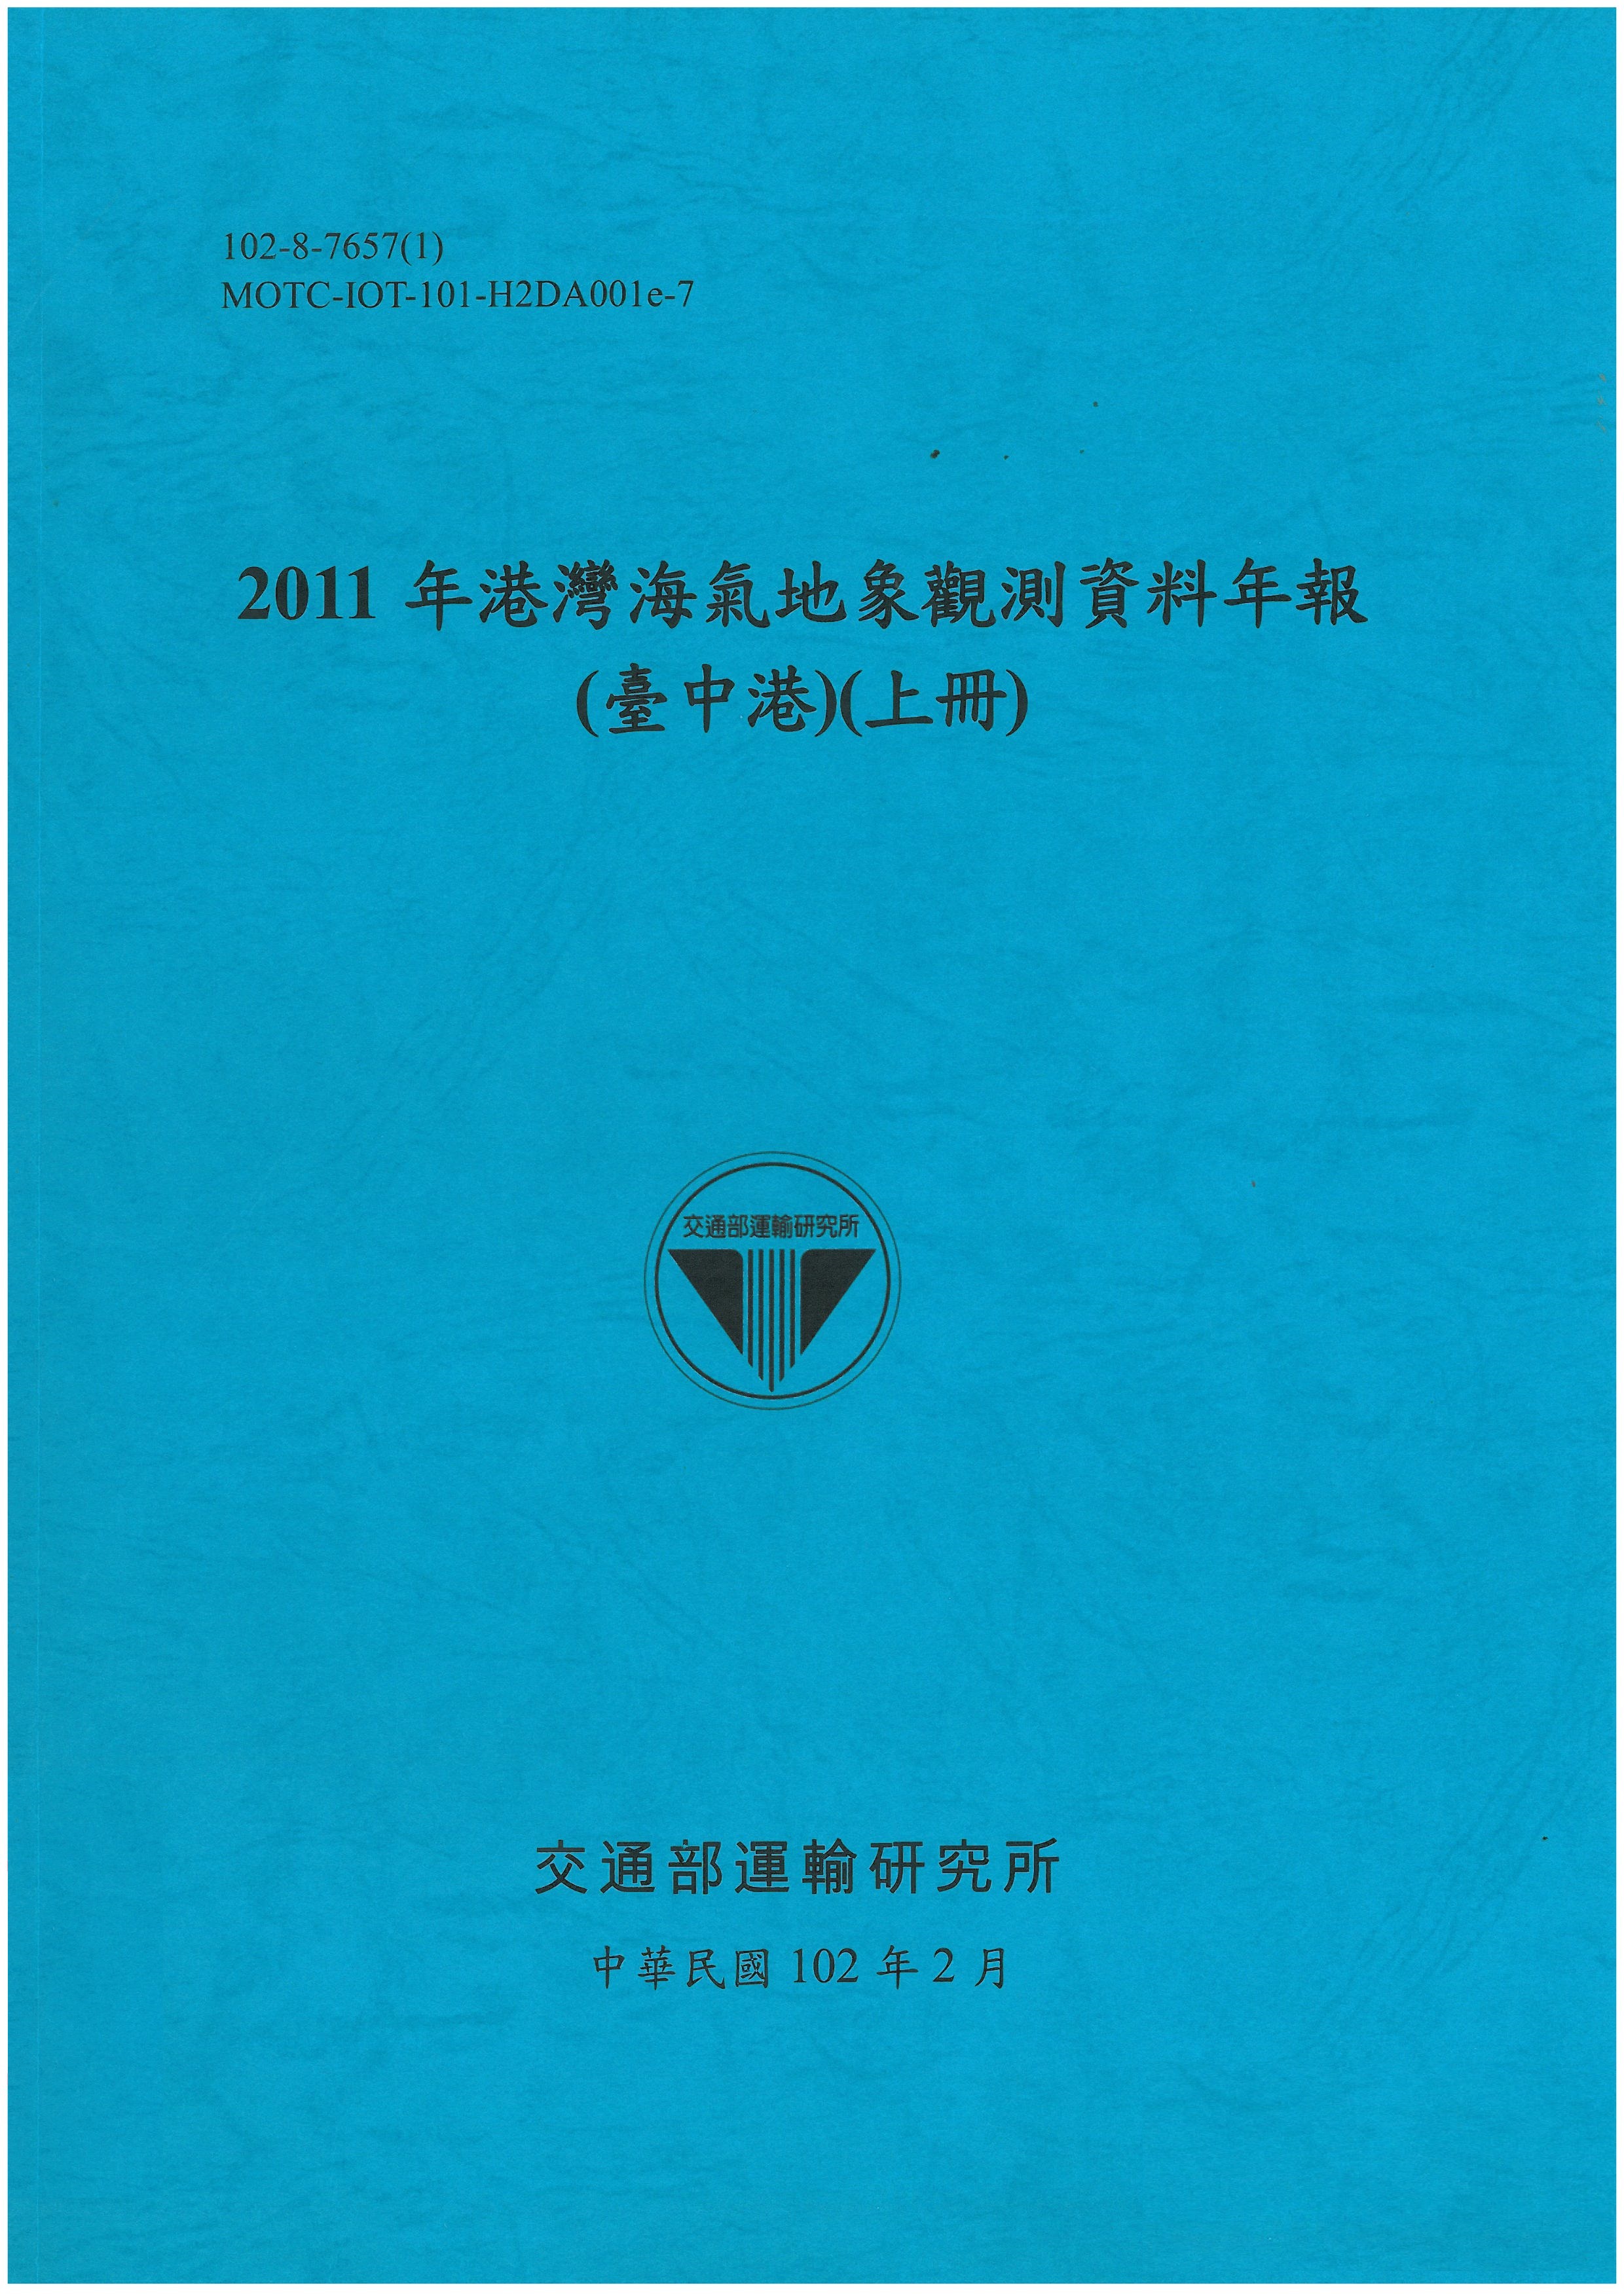 2011年港灣海氣地象觀測資料年報(臺中港)(上冊)